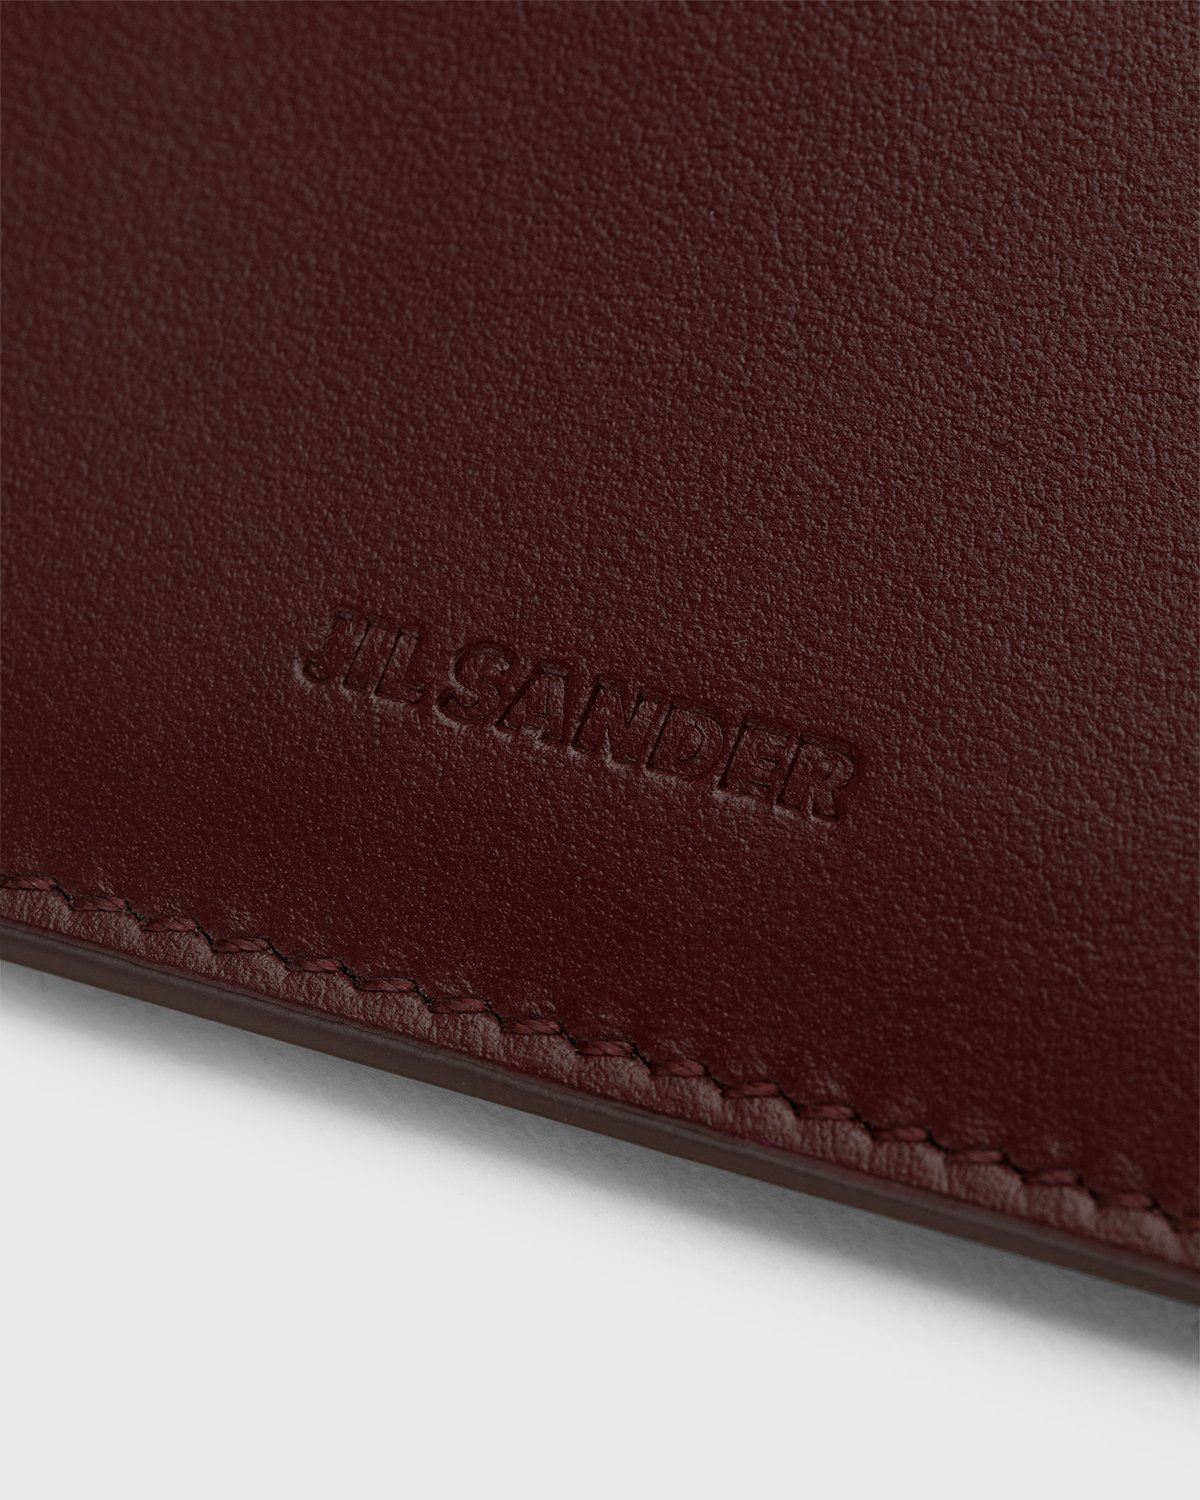 Jil Sander – Leather Card Holder Dark Red - Wallets - Red - Image 4